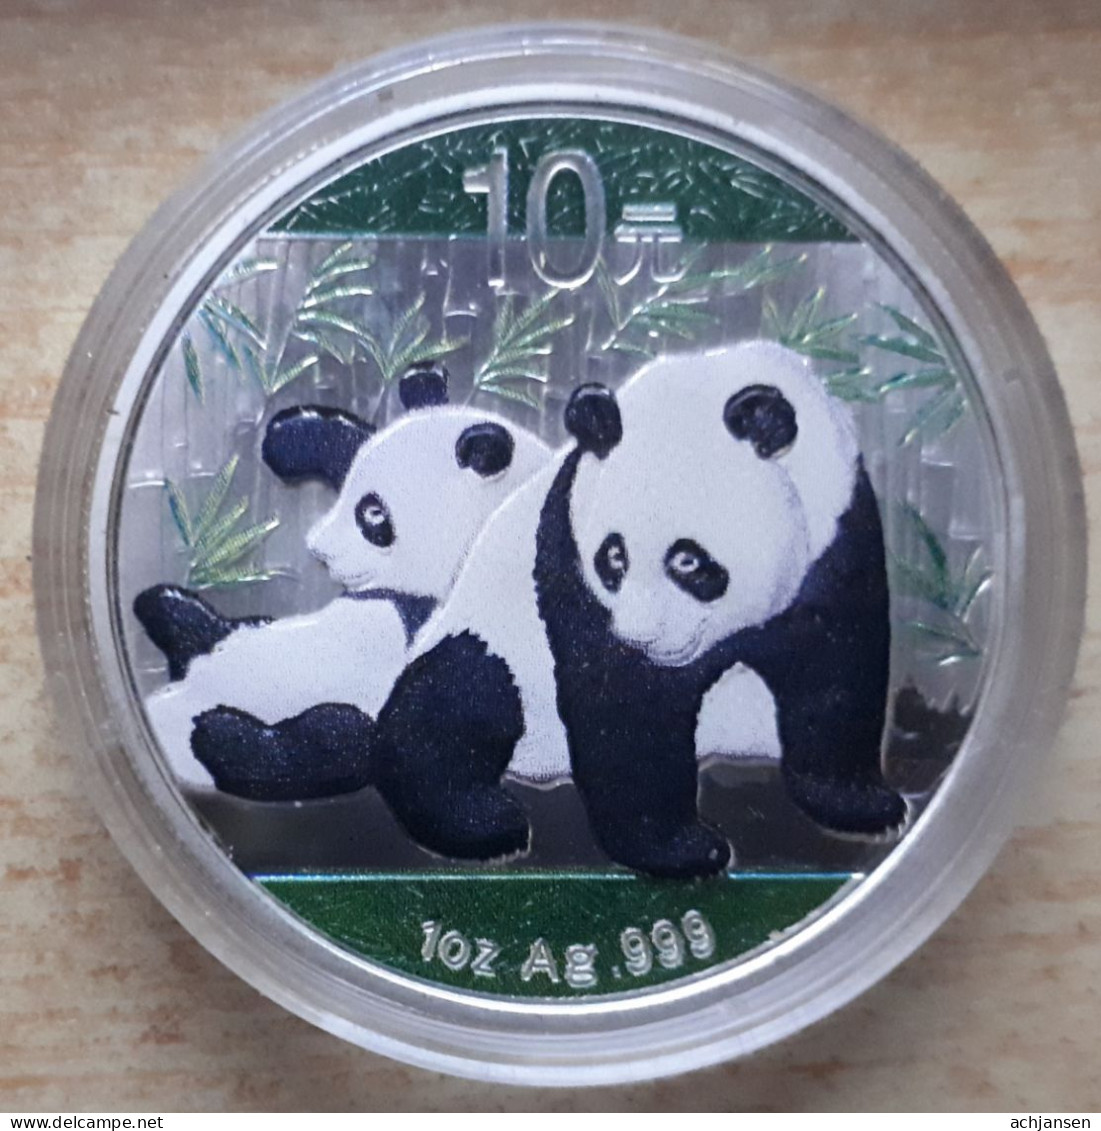 China, Panda 2010 - 1 Oz. Pure Silver - Chine